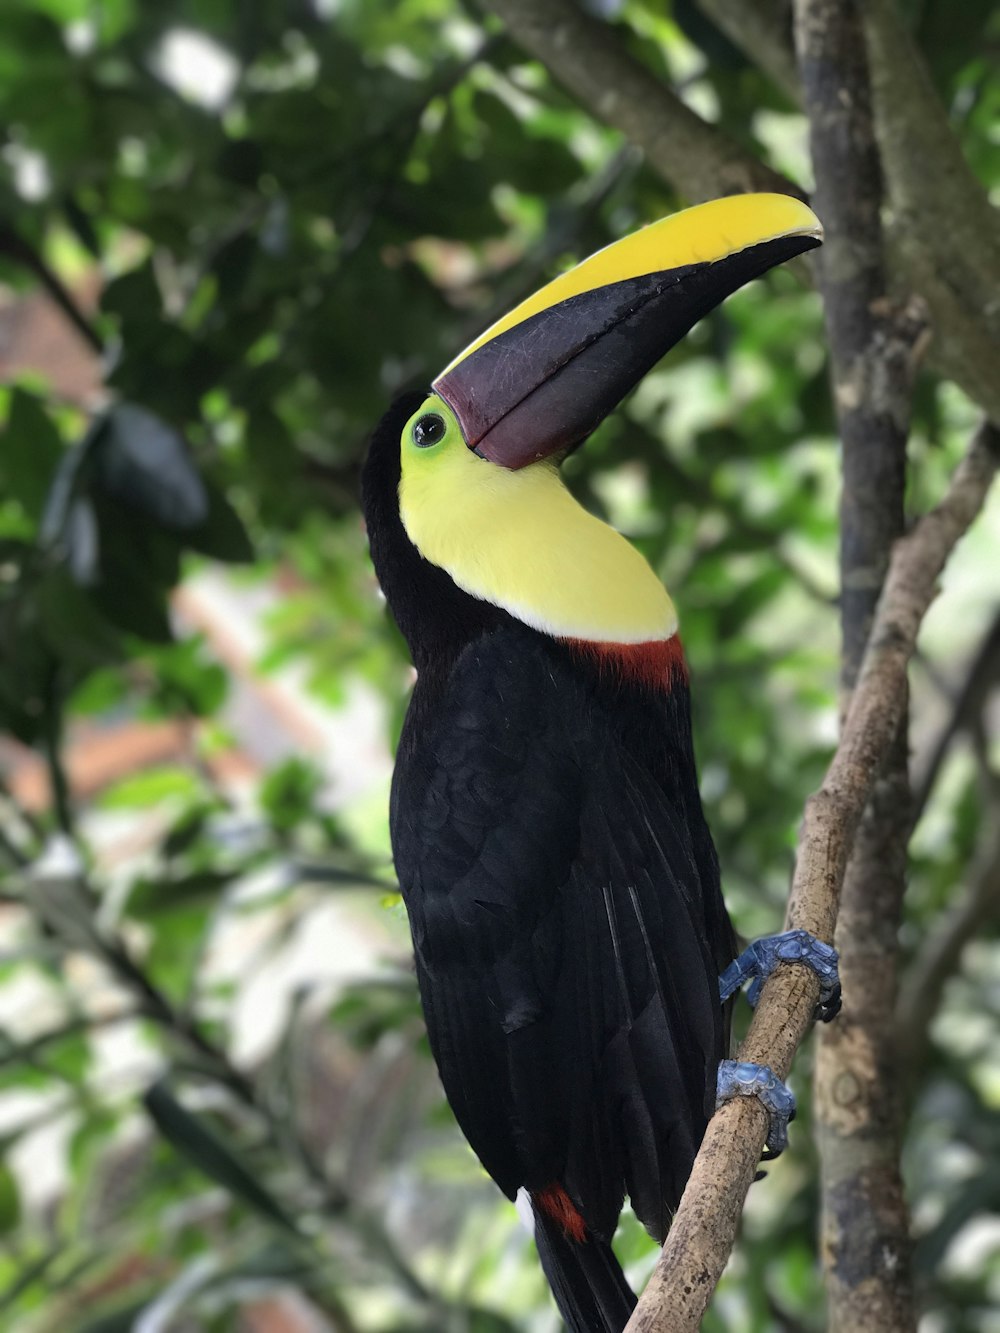 pássaro amarelo e vermelho preto no galho marrom da árvore